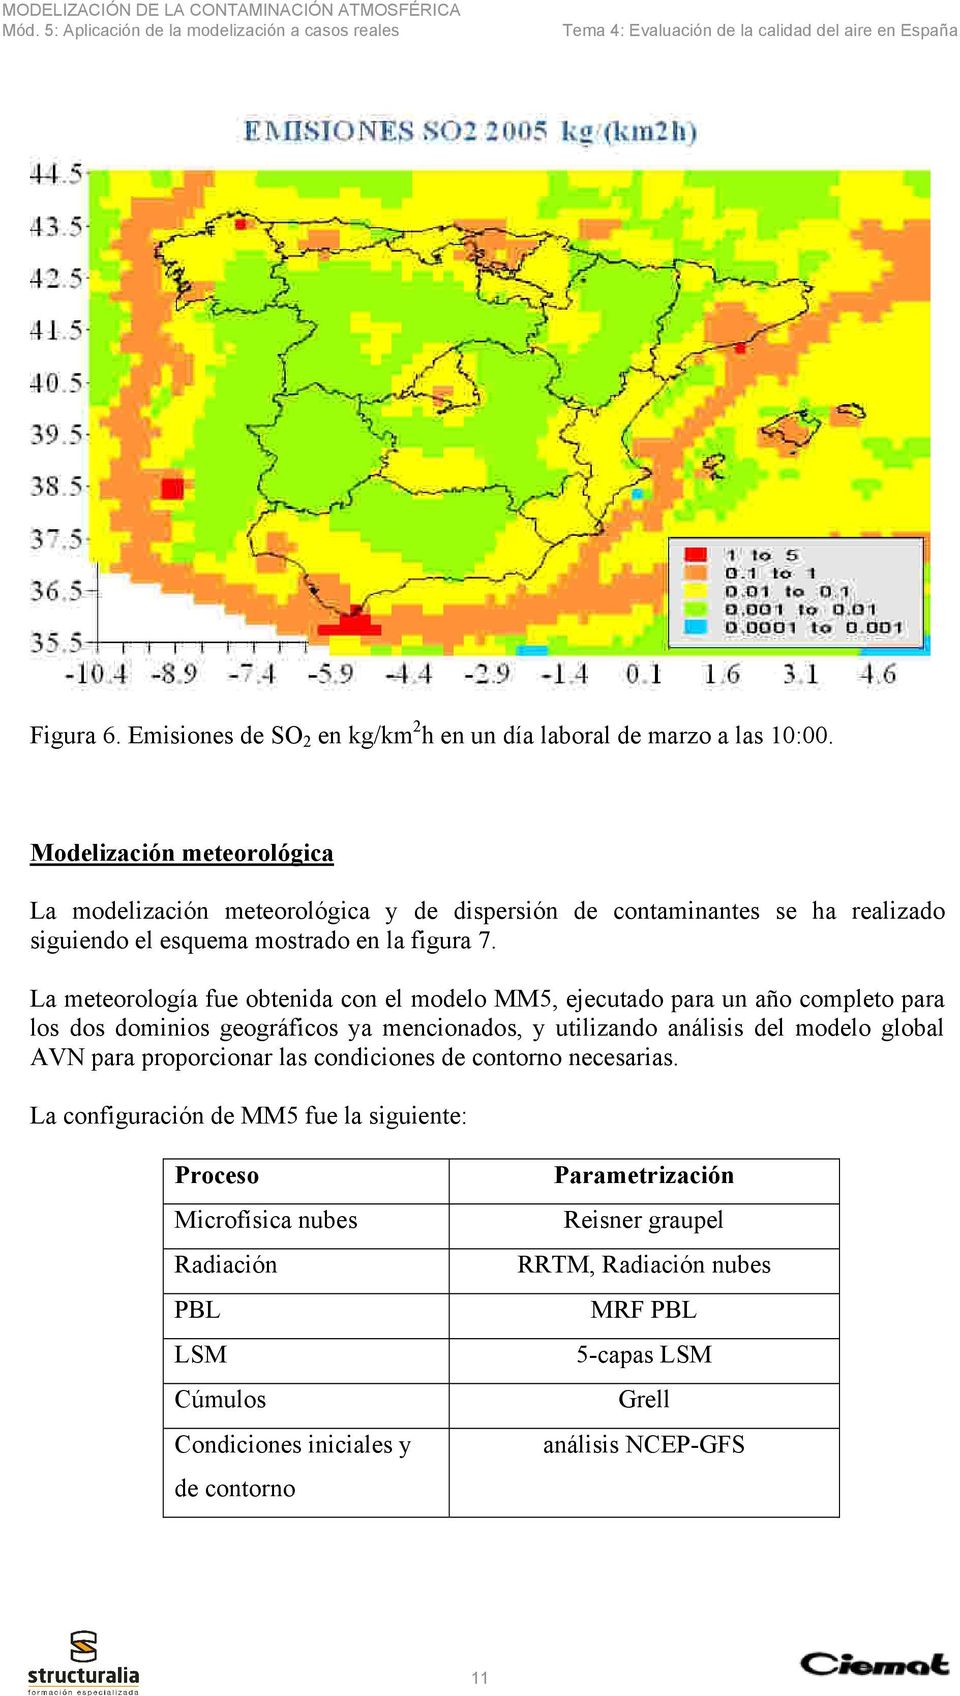 La meteorología fue obtenida con el modelo MM5, ejecutado para un año completo para los dos dominios geográficos ya mencionados, y utilizando análisis del modelo global AVN